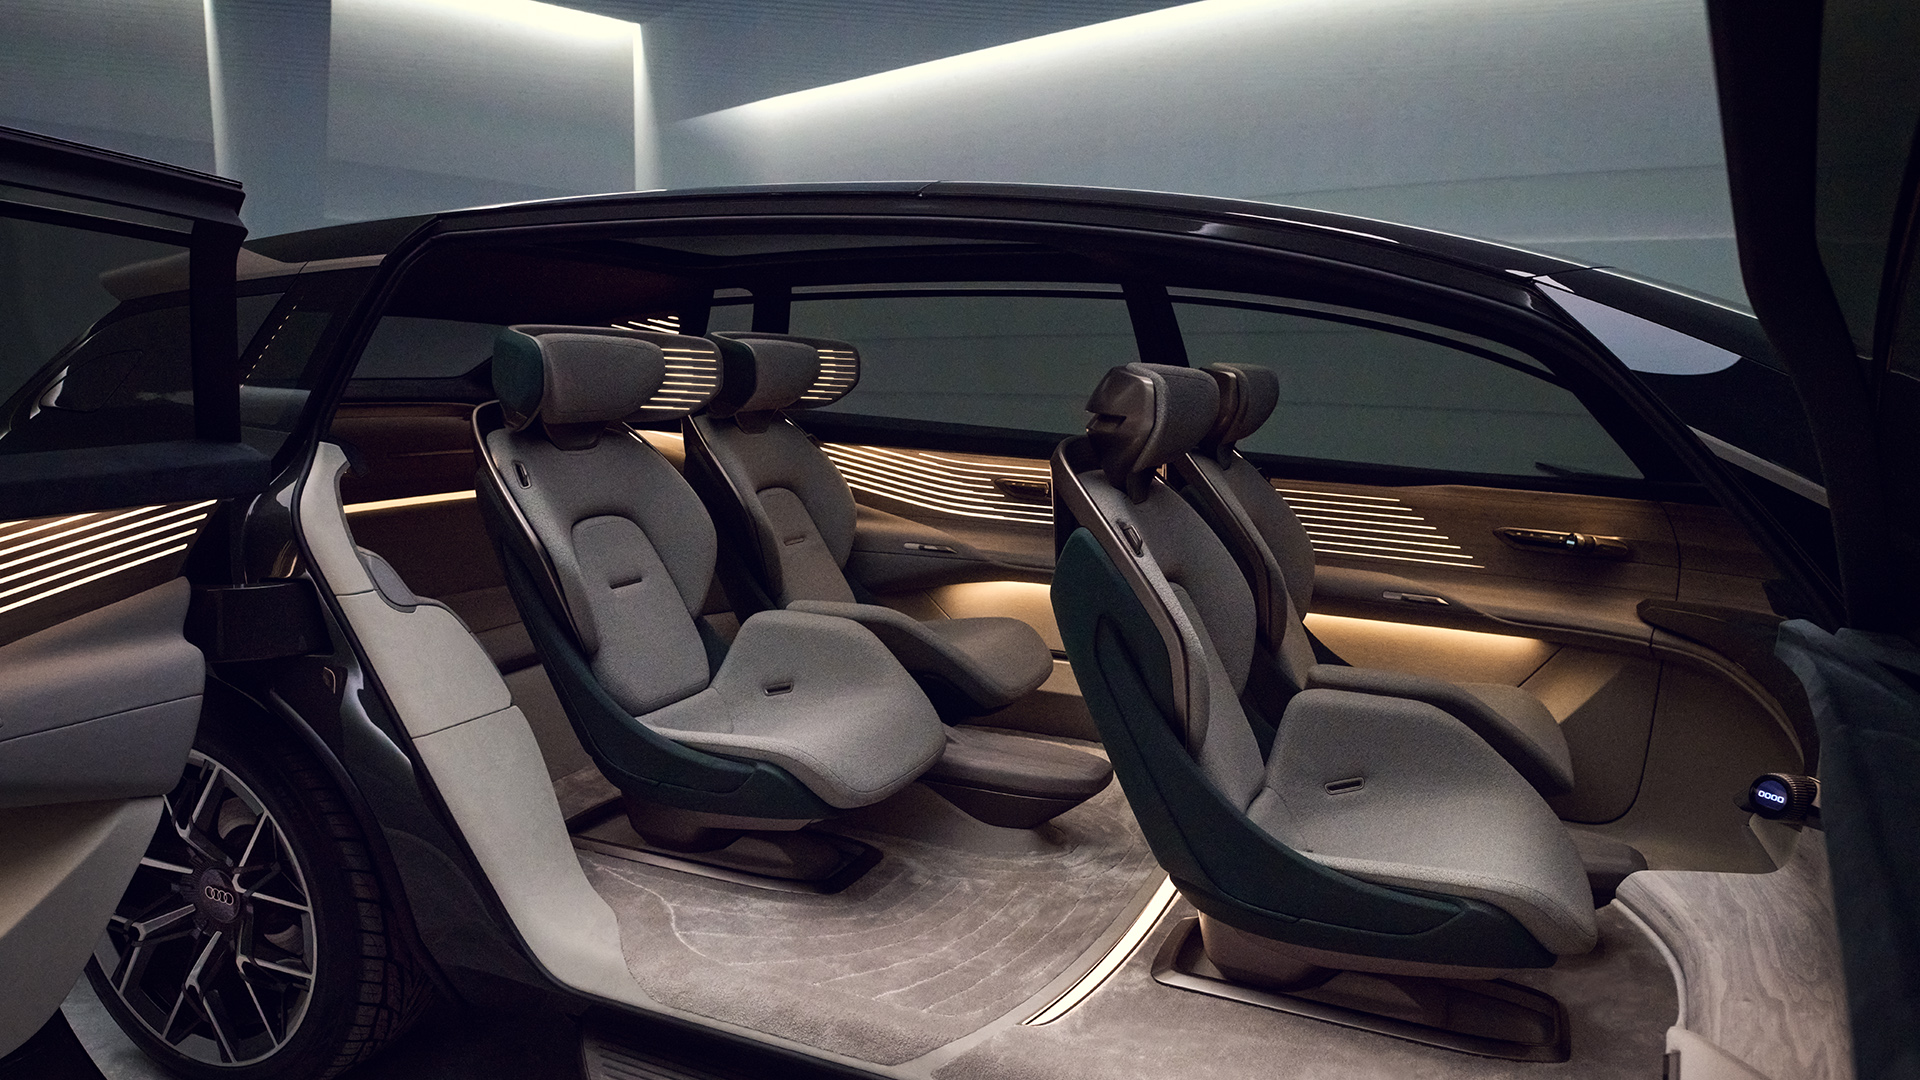  Widok na wnętrze Audi urbansphere concept z czterema indywidualnymi siedzeniami.